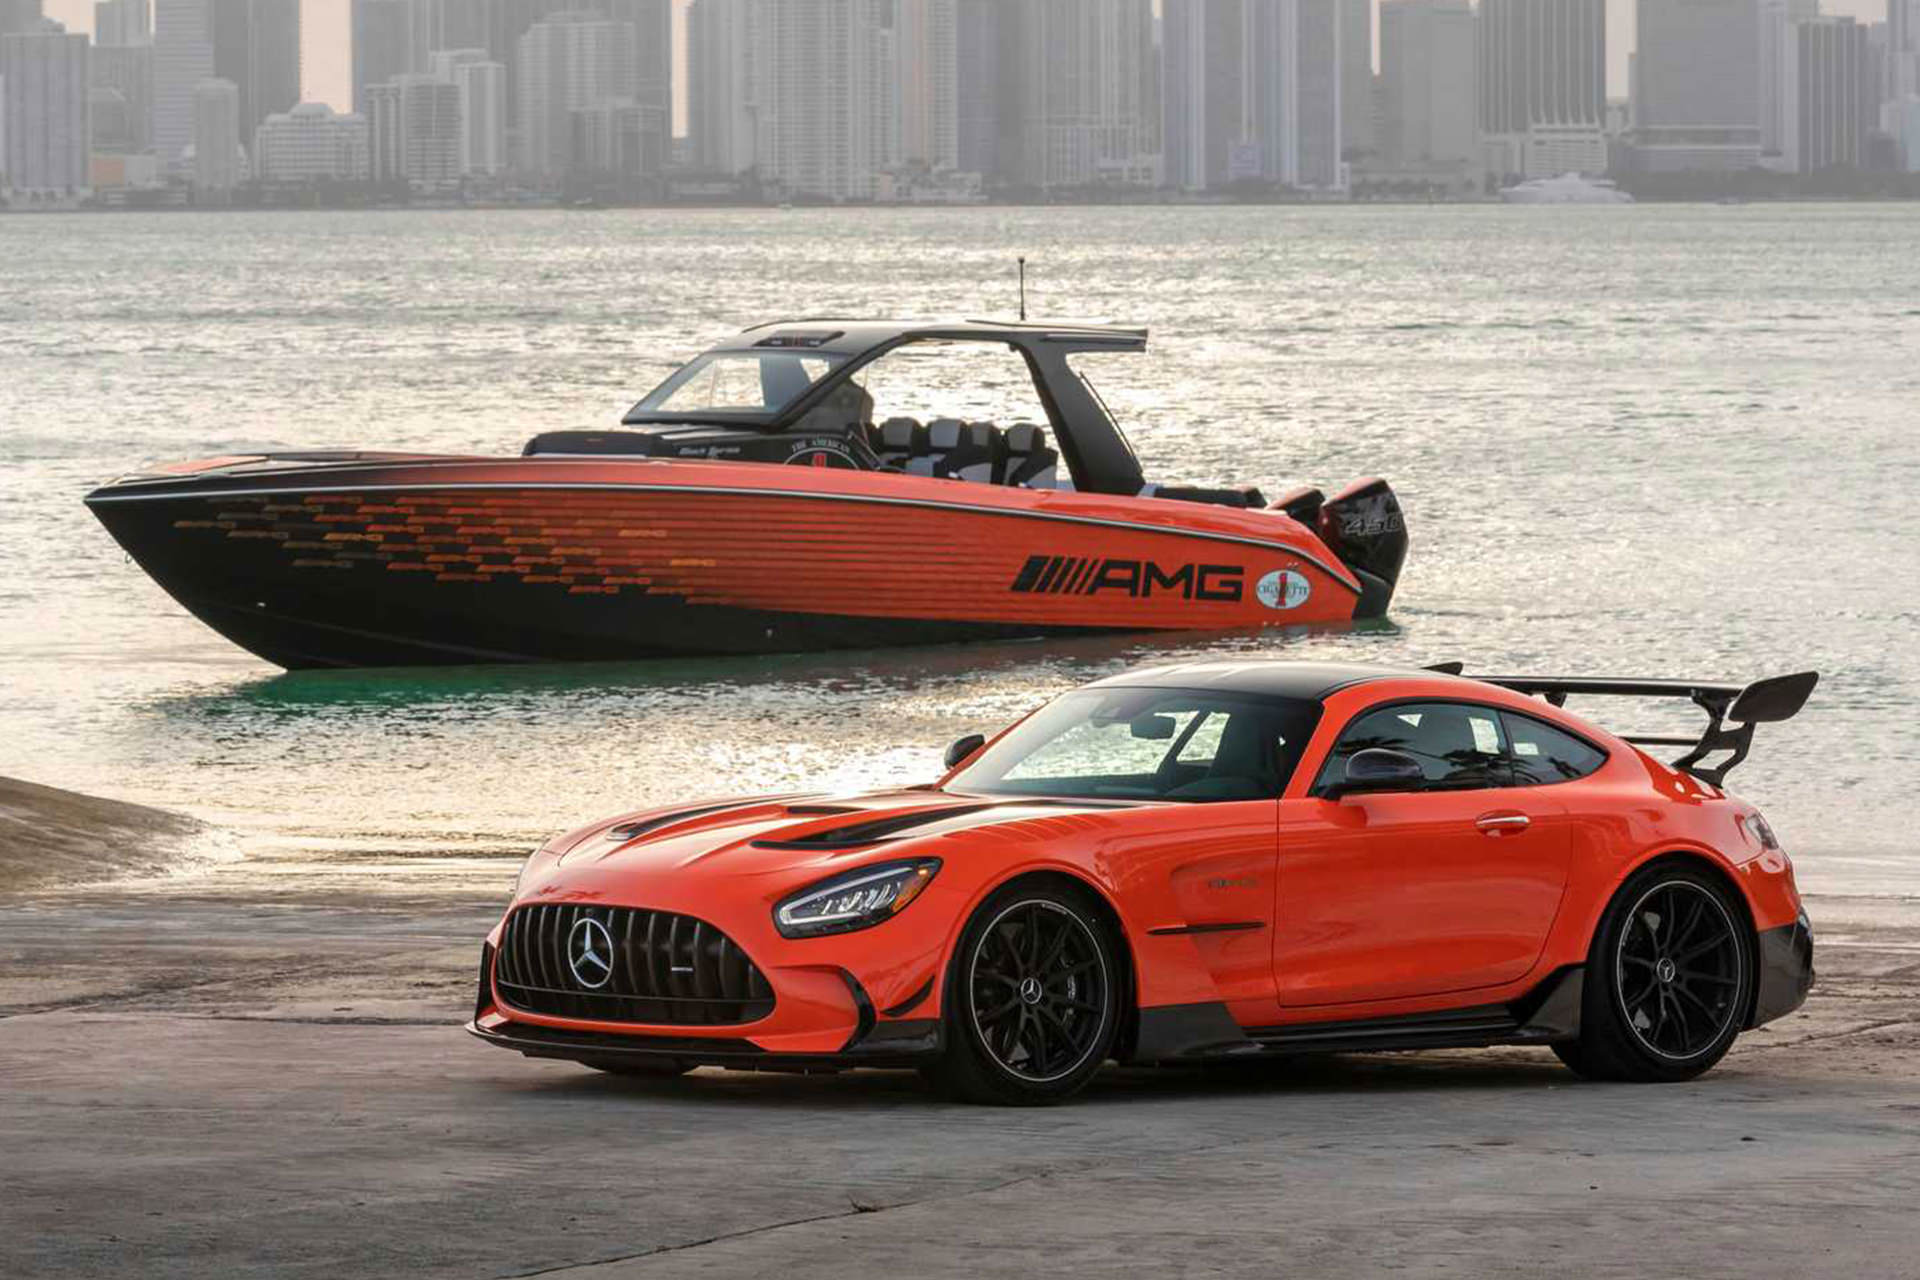 قایق پرسرعت مرسدس آ ام گ نایت هاوک سری سیاه / Mercedes-AMG Black Series Cigarette Boat در کنار خودروی مرسدس بنز